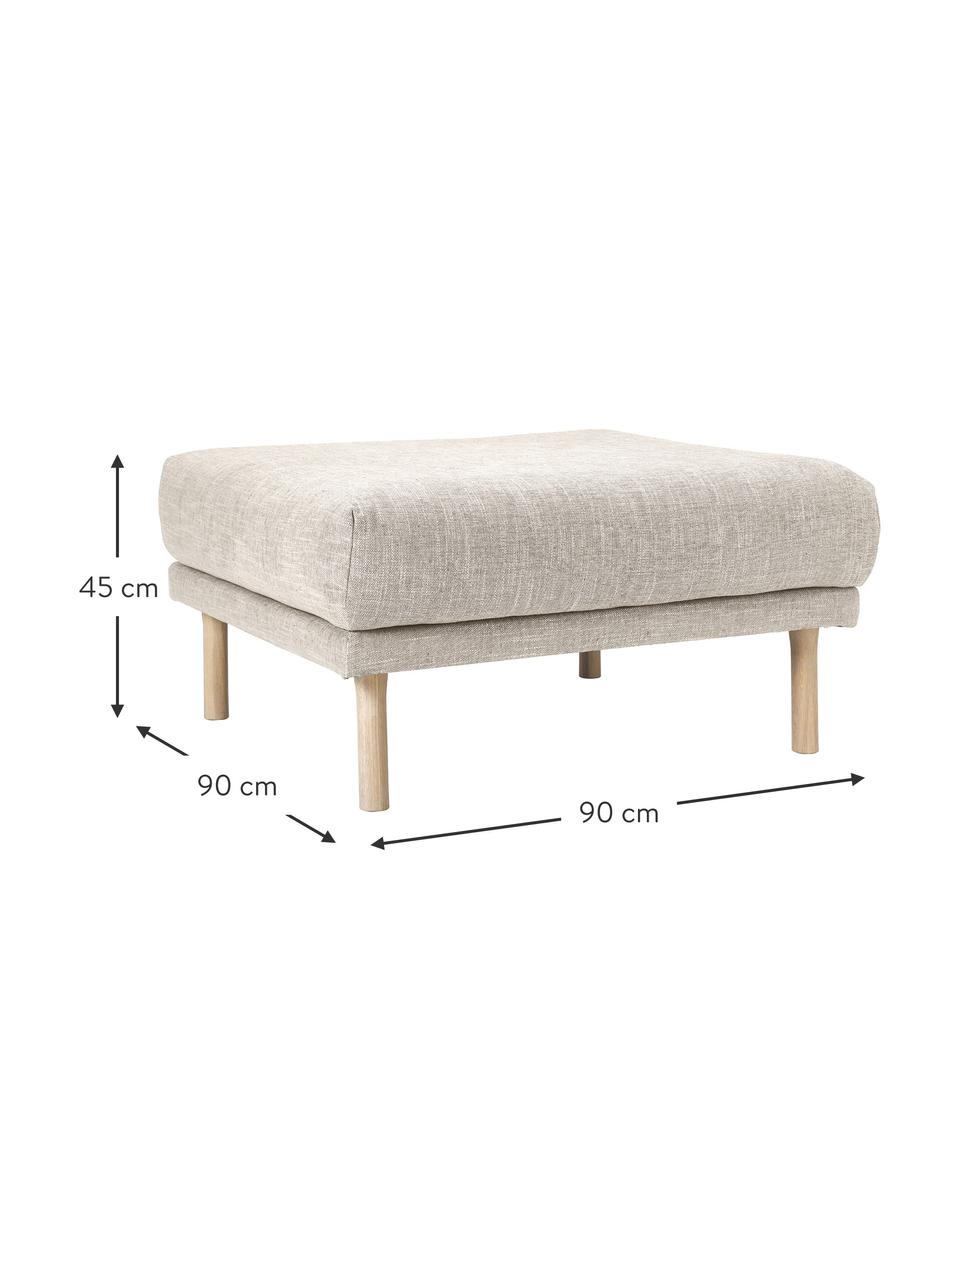 Poggiapiedi divano Adrian, Rivestimento: 47% viscosa, 23% cotone, , Struttura: compensato, Piedini: legno di quercia oliato, Tessuto beige, Larg. 90 x Alt. 45 cm